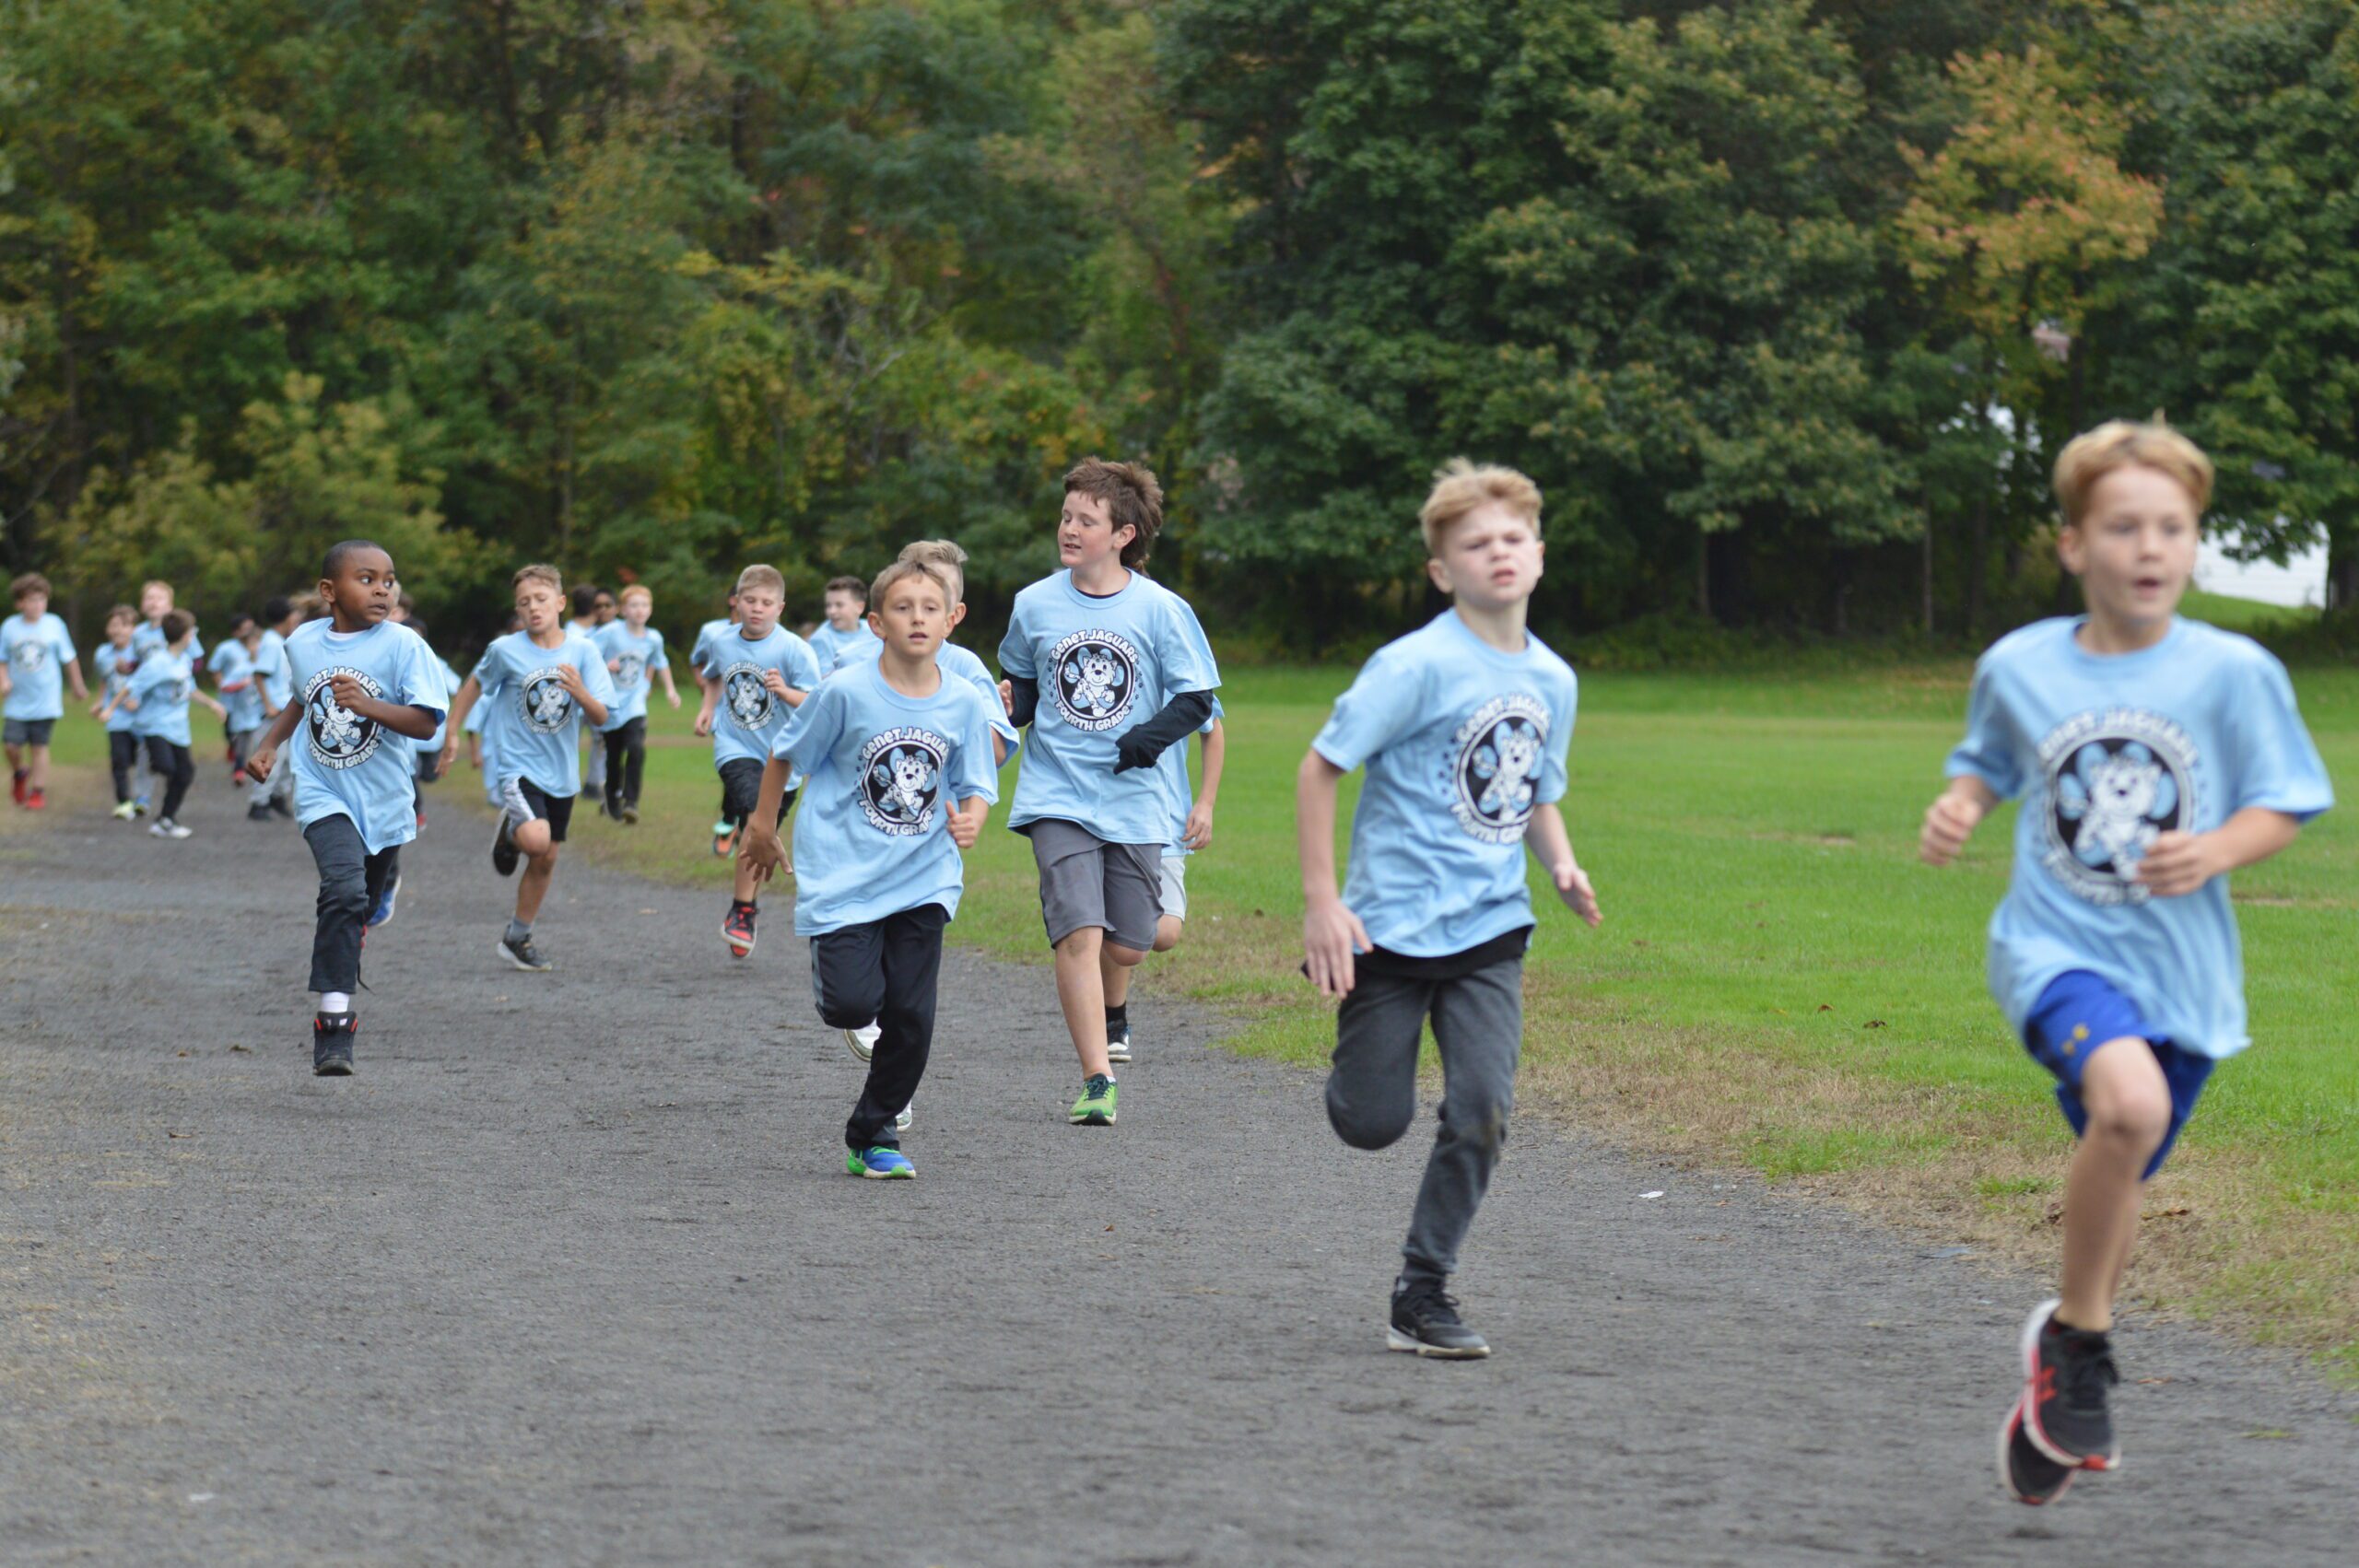 Students race in the Genet Fall Fun Run.